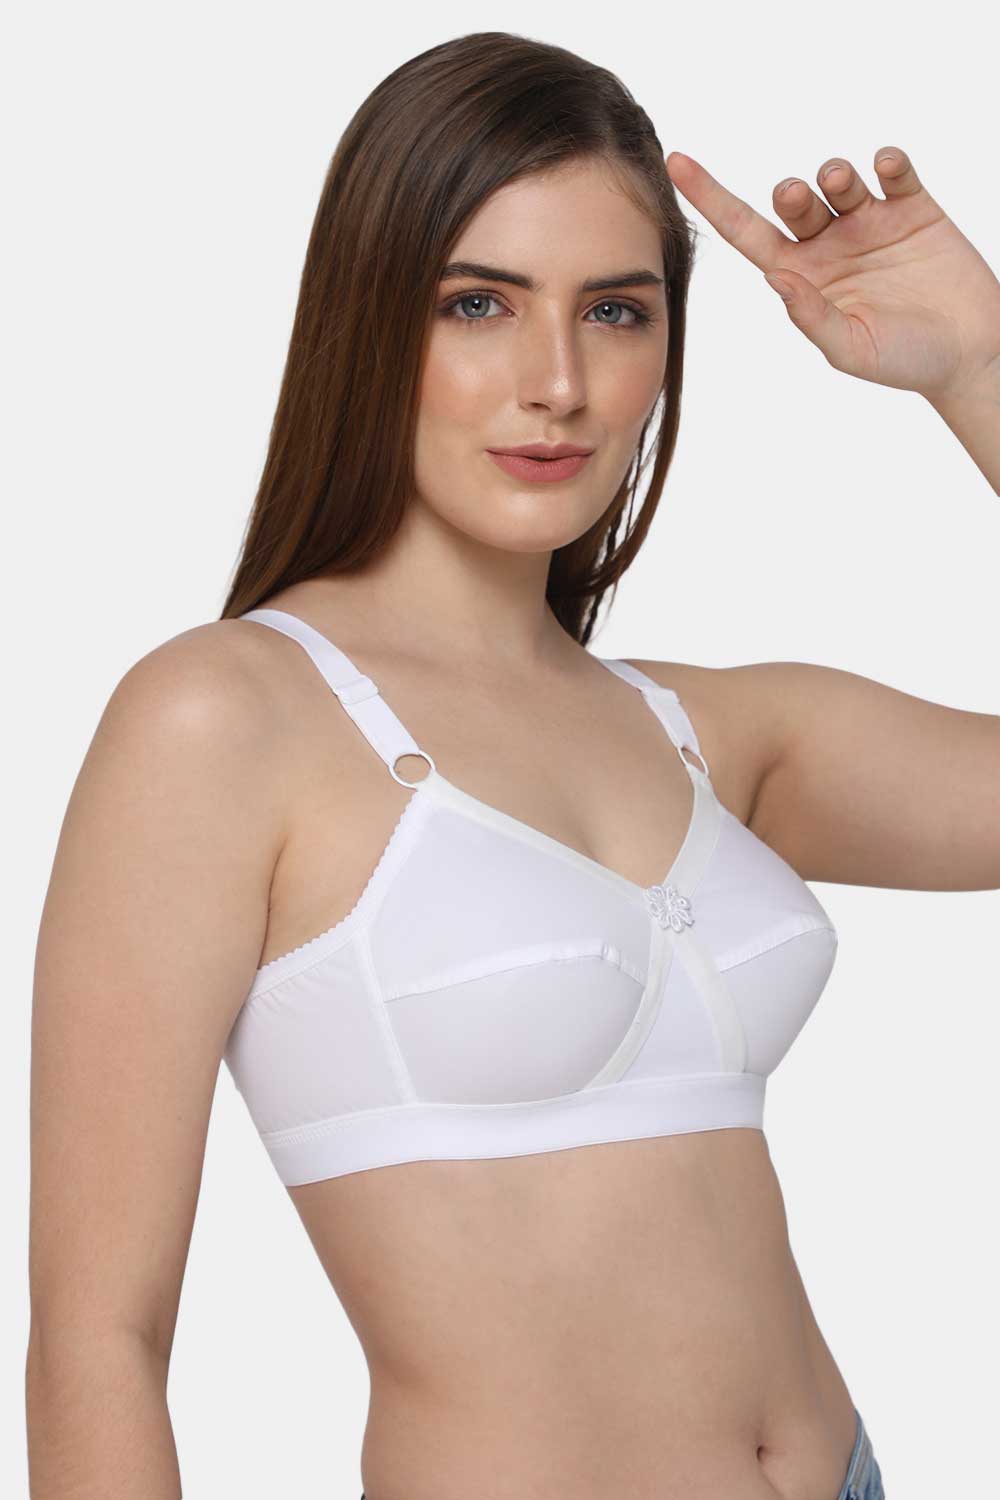 Buy Ultrafit Cotton Full Coverage Bra for Women / Girls